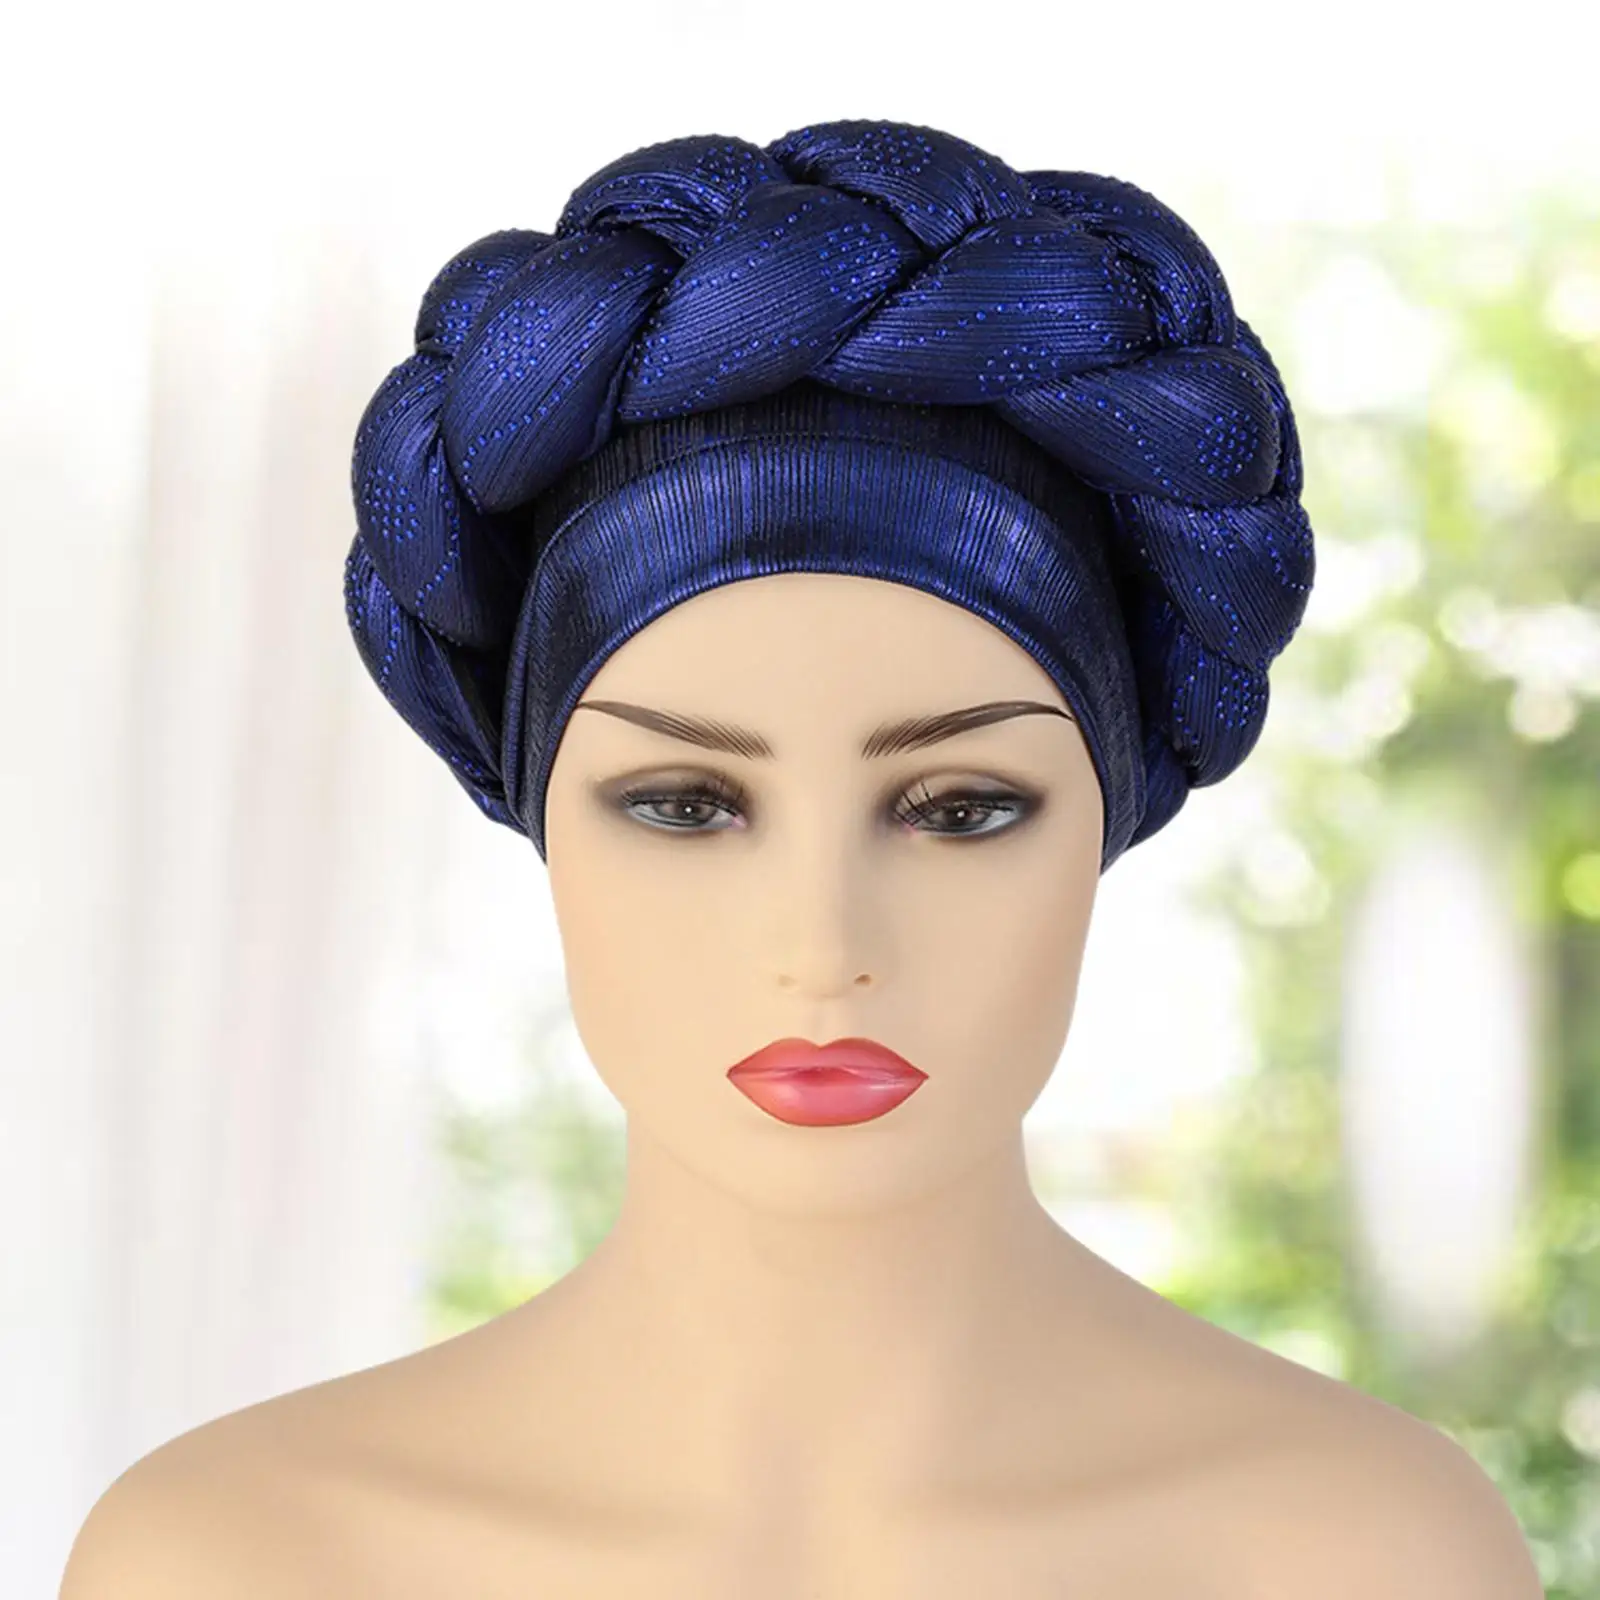 Women Beanie Cap Birthday Gift African Turban Head Wraps Bonnet Hijab Hat Rhinestones Head Scarf for Festival Lady Female Church